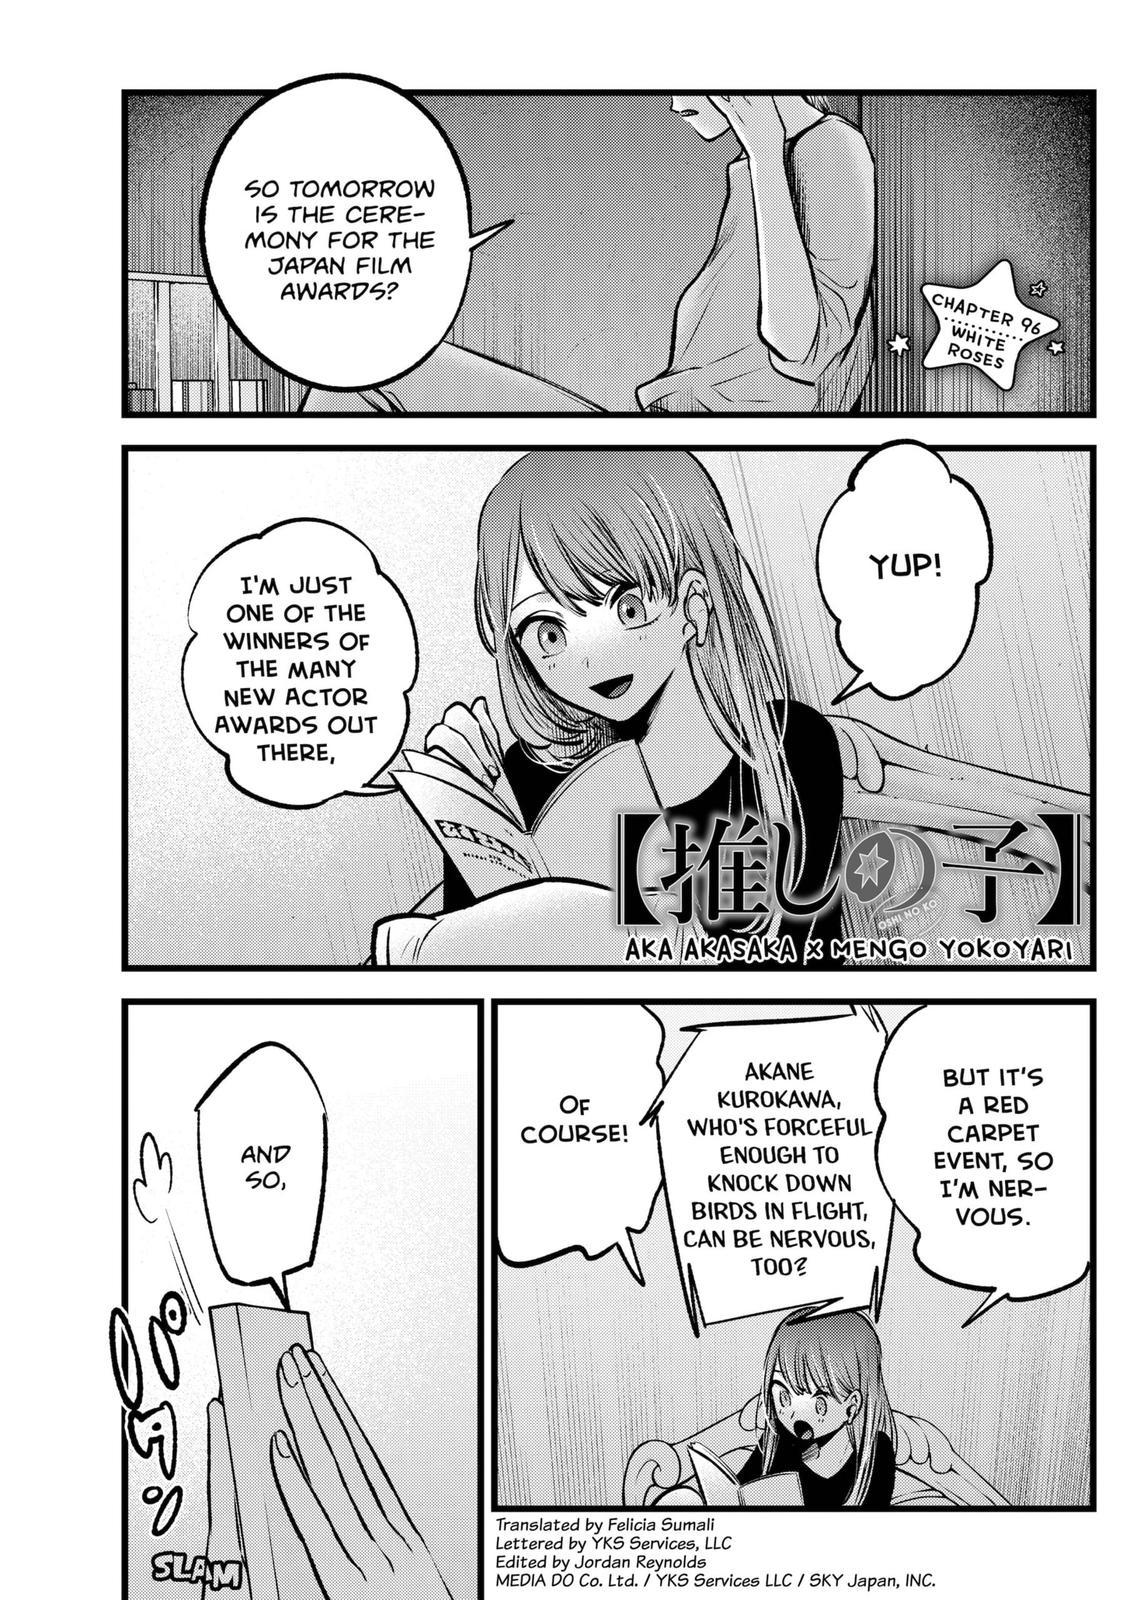 Oshi no ko, Chapter 126 - Oshi no ko Manga Online